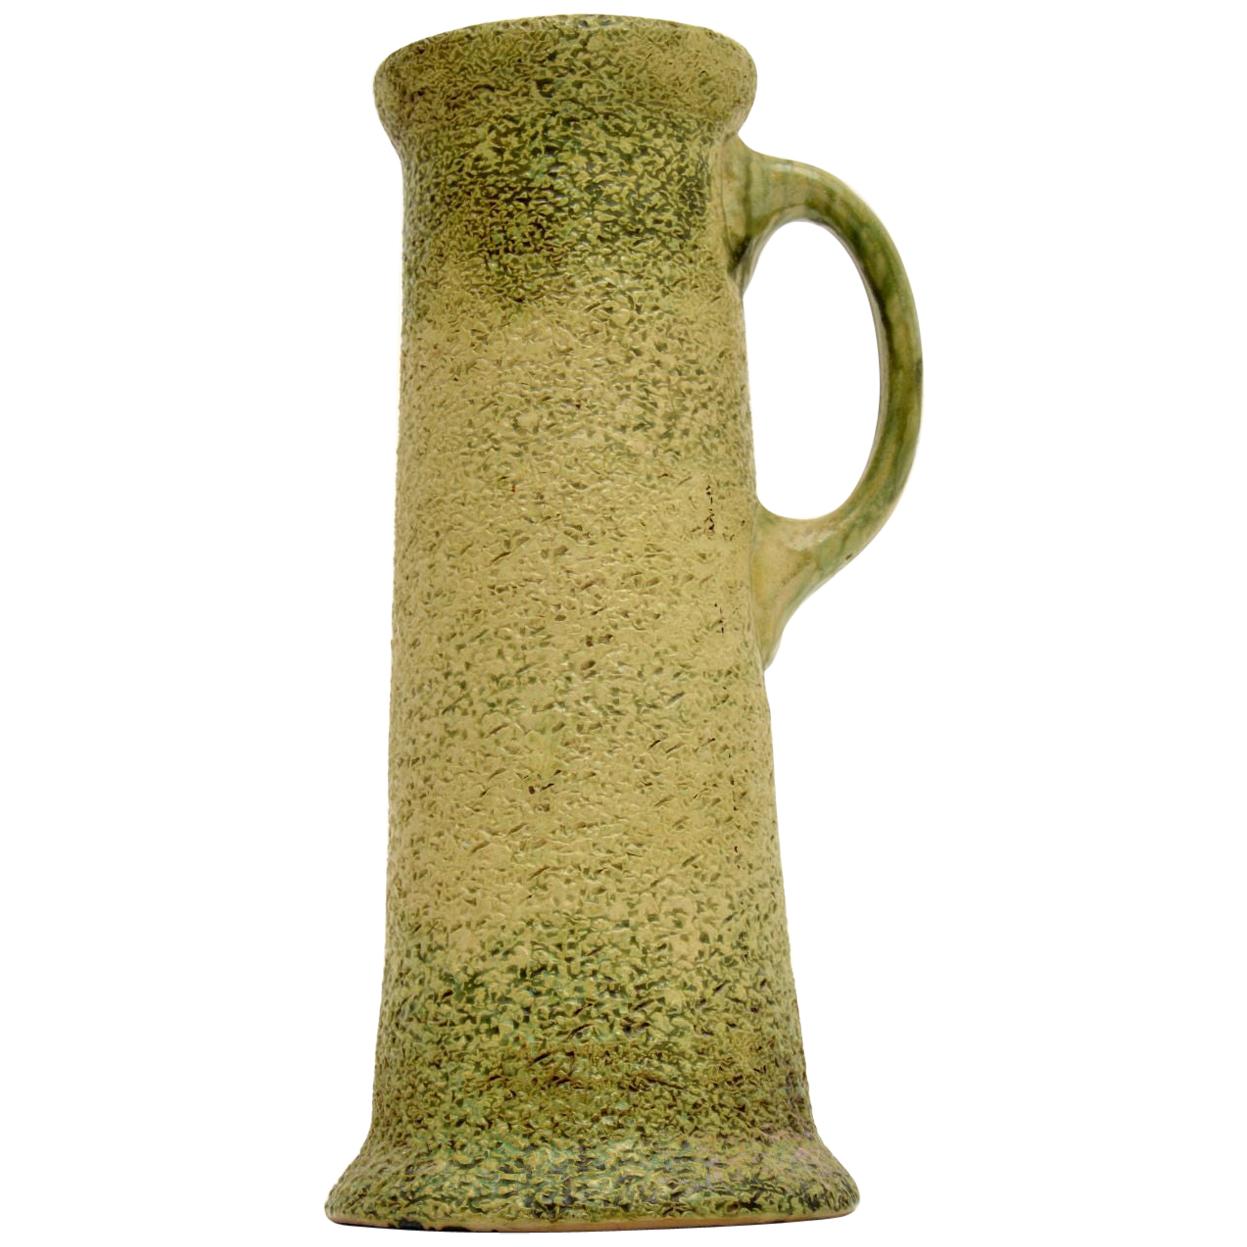 Large Vintage Glazed Ceramic Pitcher / Vase For Sale